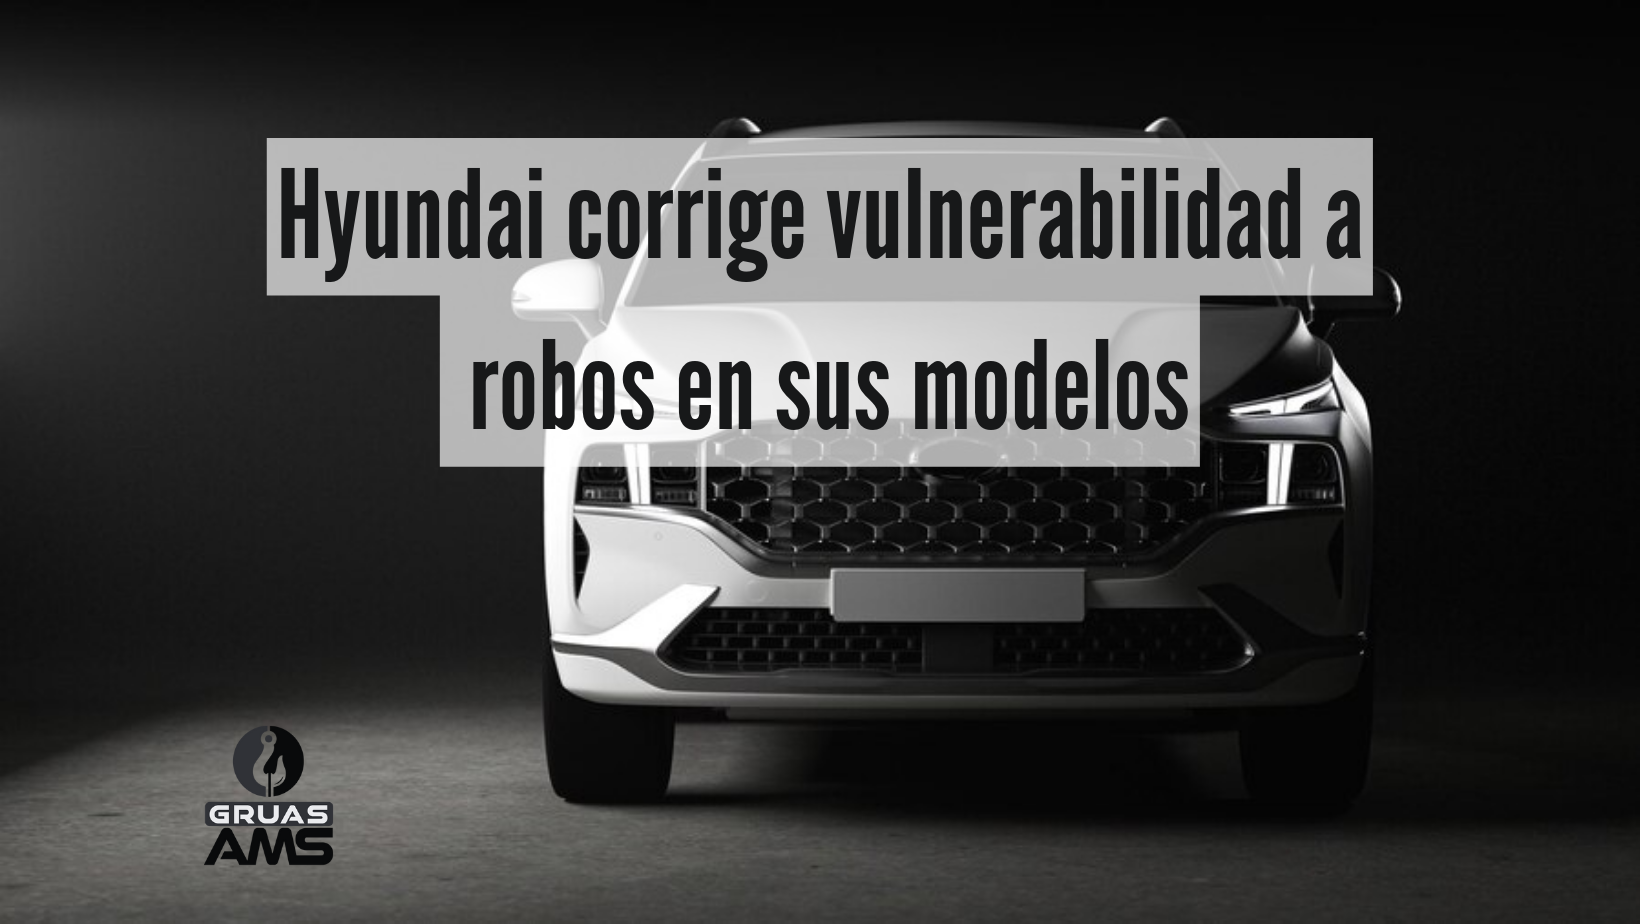 Hyundai corrige vulnerabilidad a robos a sus modelos